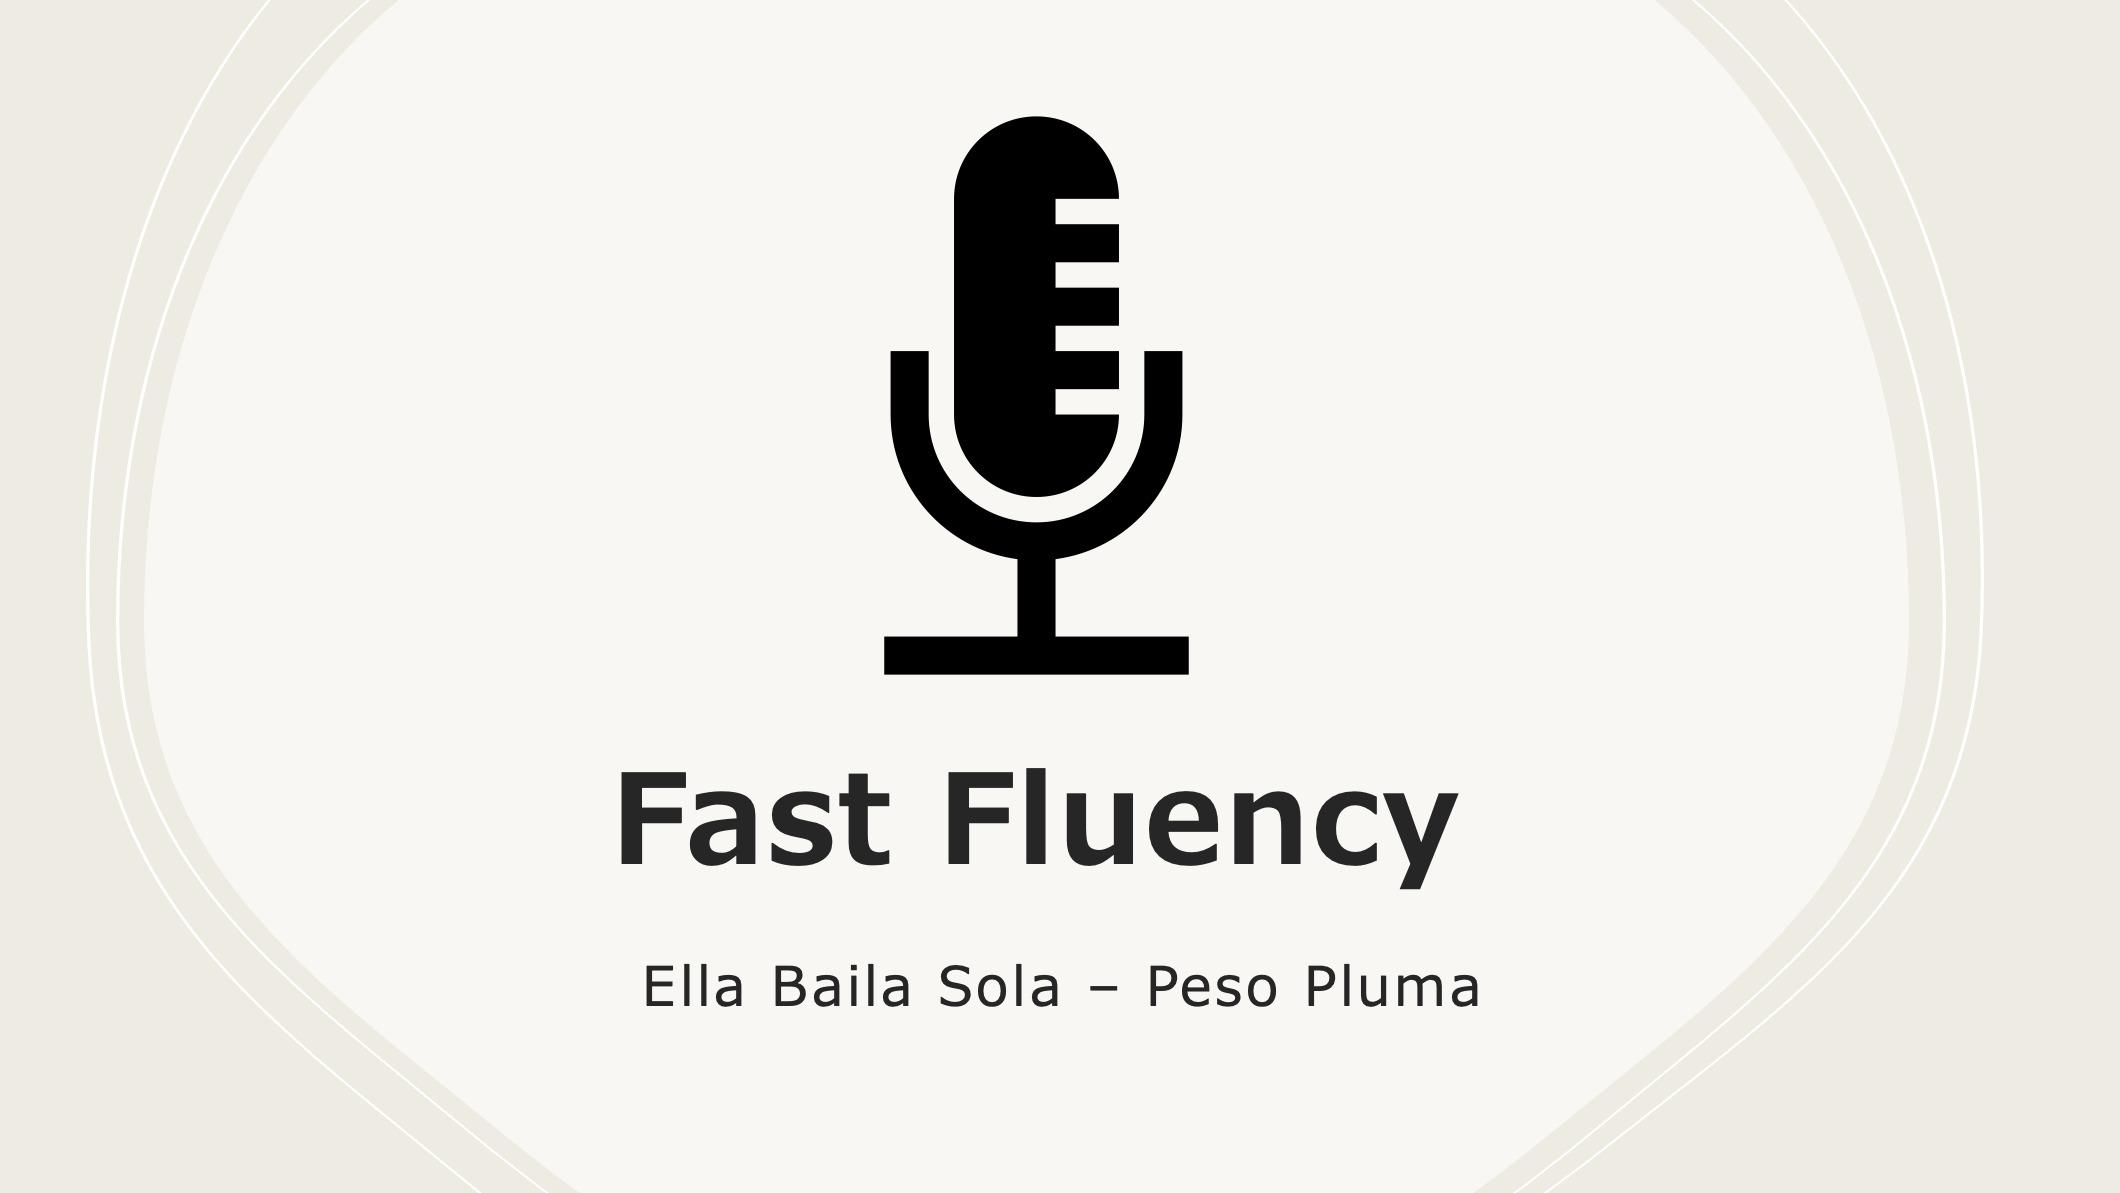 Fast Fluency: Ella Baila Sola 